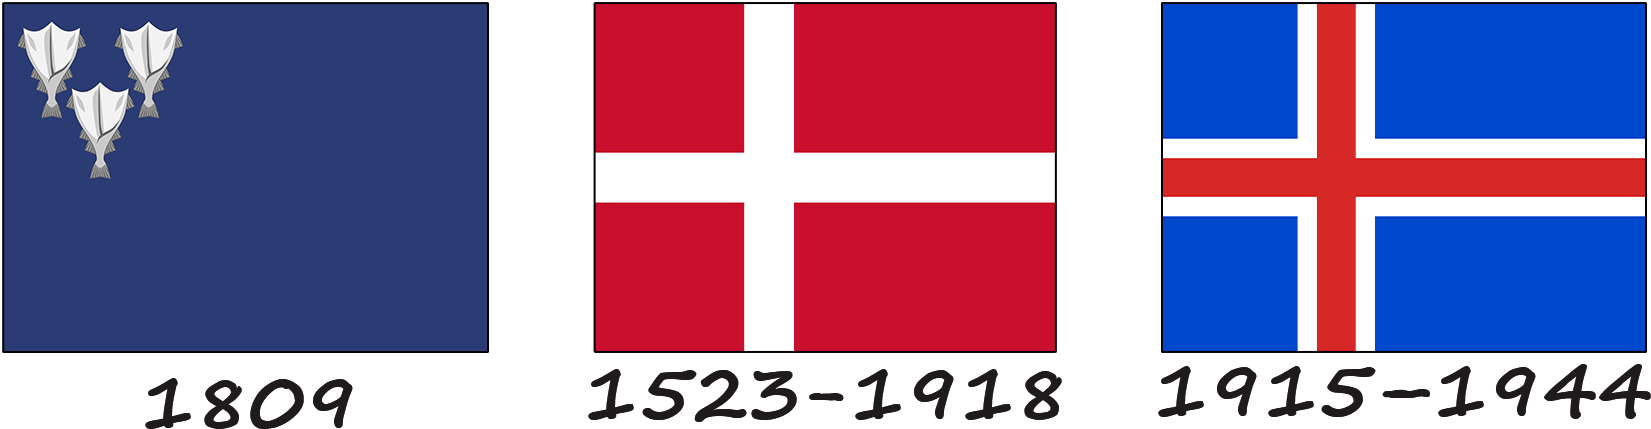 Історія прапору Ісландії